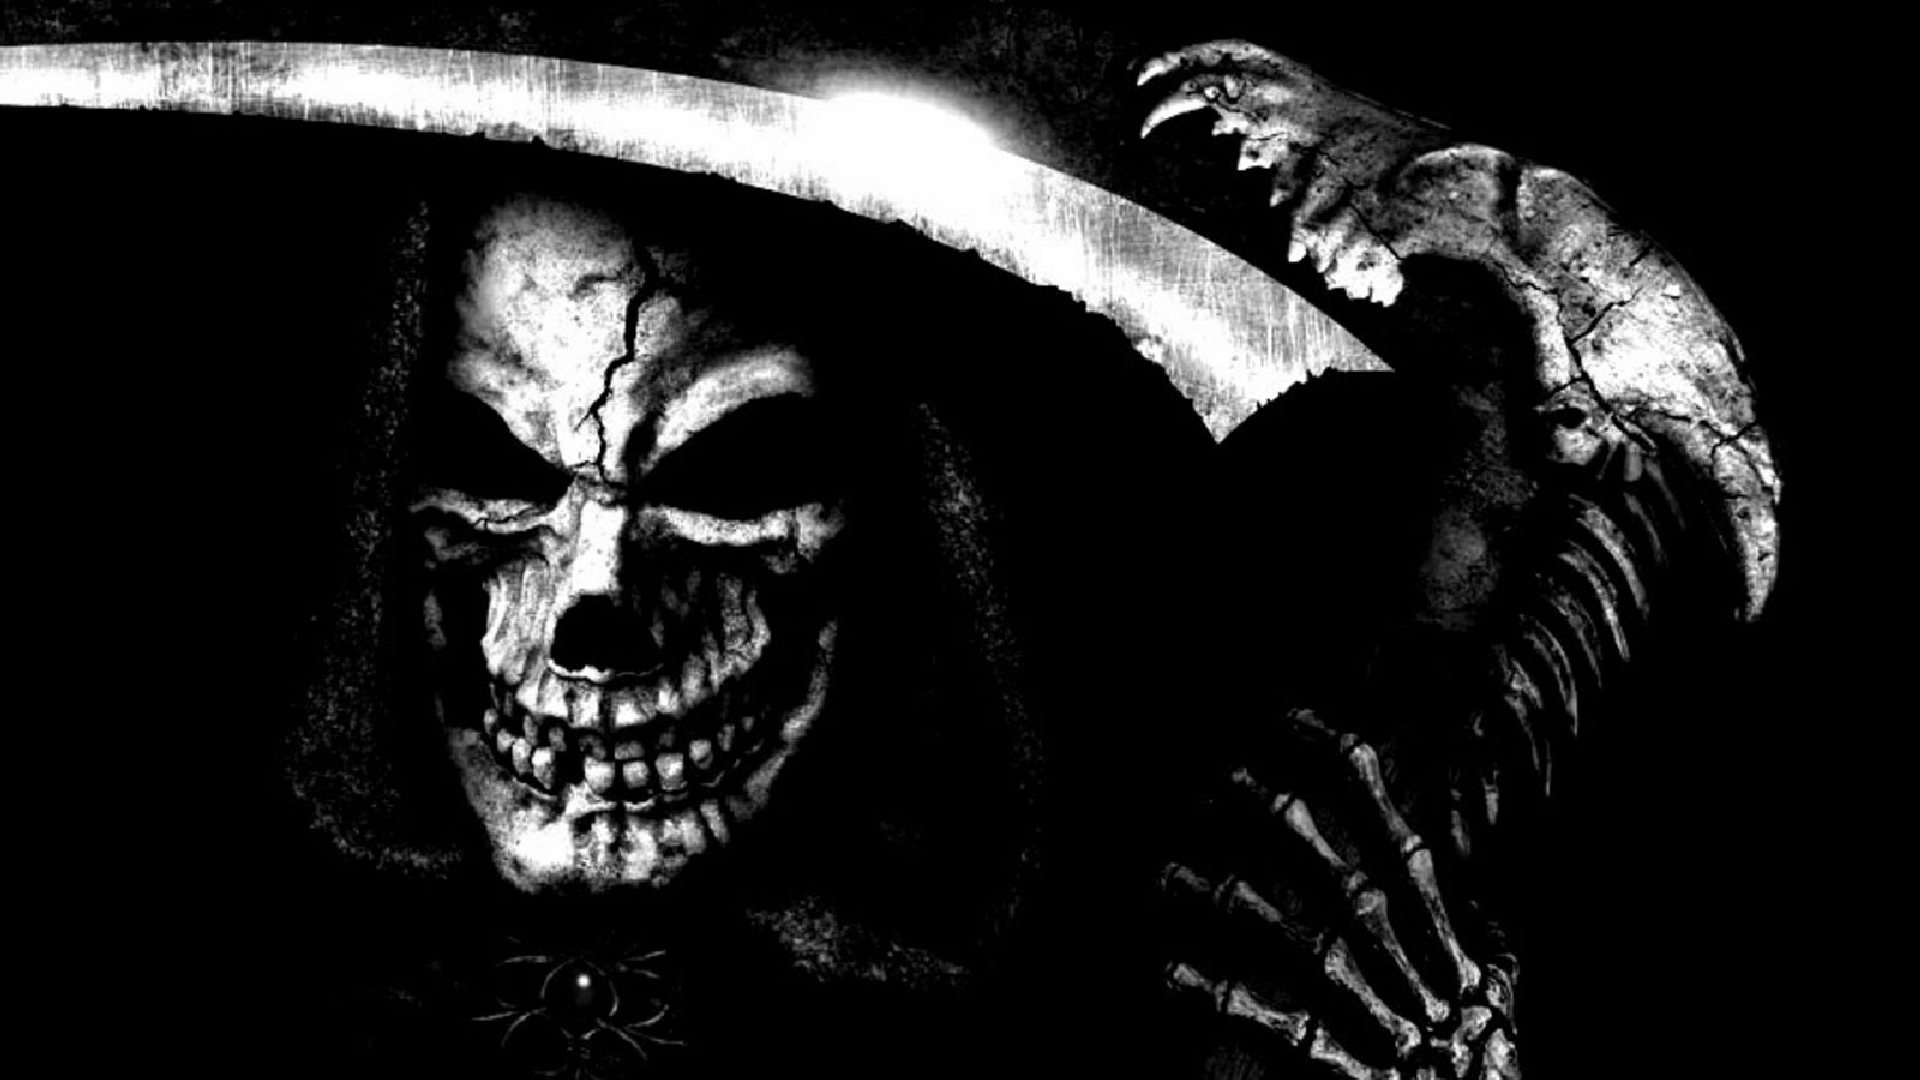 Dark Grim Reaper Wallpaper